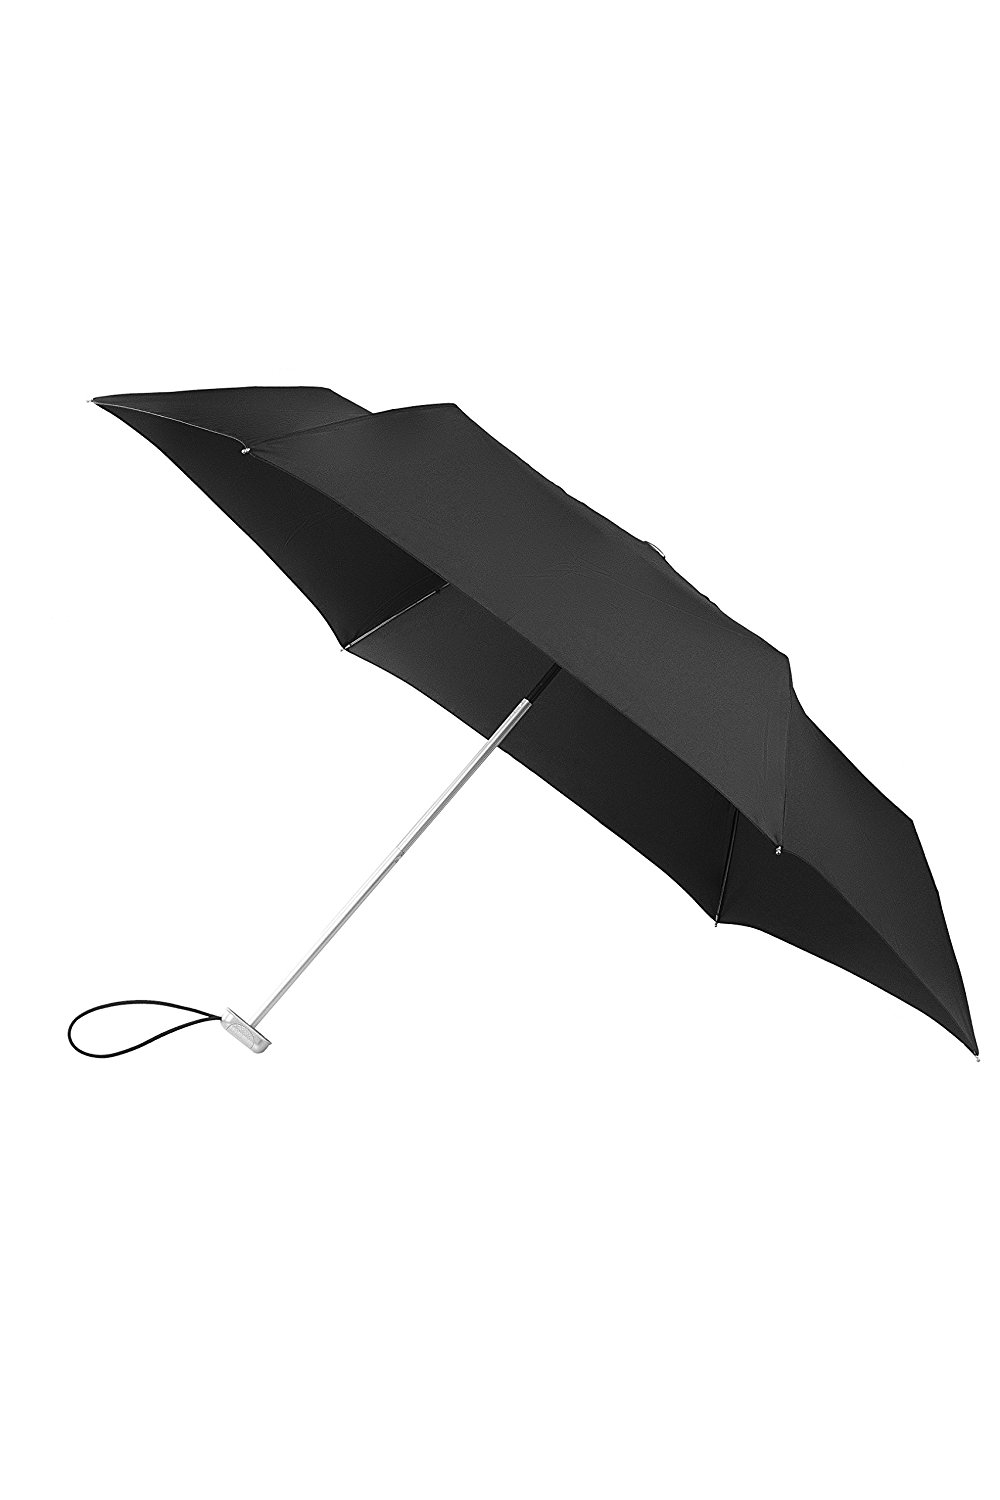 Image of Alu Drop Regenschirm Manual in Schwarz